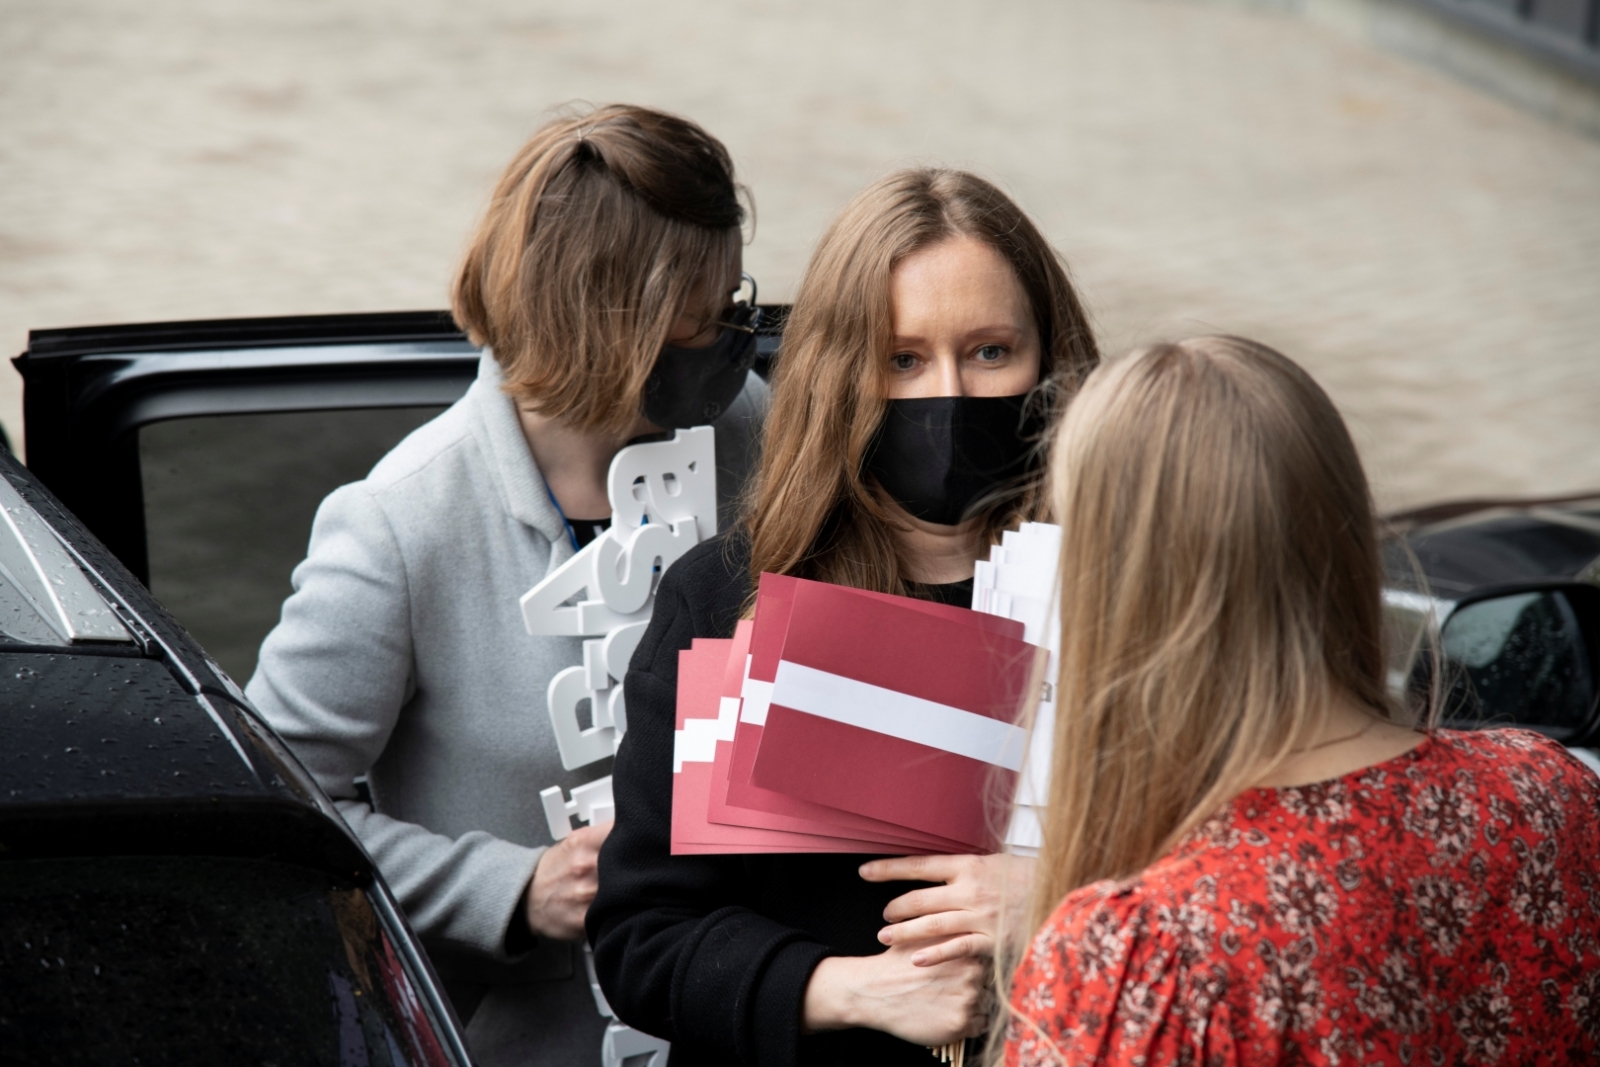 Kultūras ministrijas Latvijas valsts simtgades biroja komanda nodod LNVM LV100 programmas laikā uzkrāto arhīvu